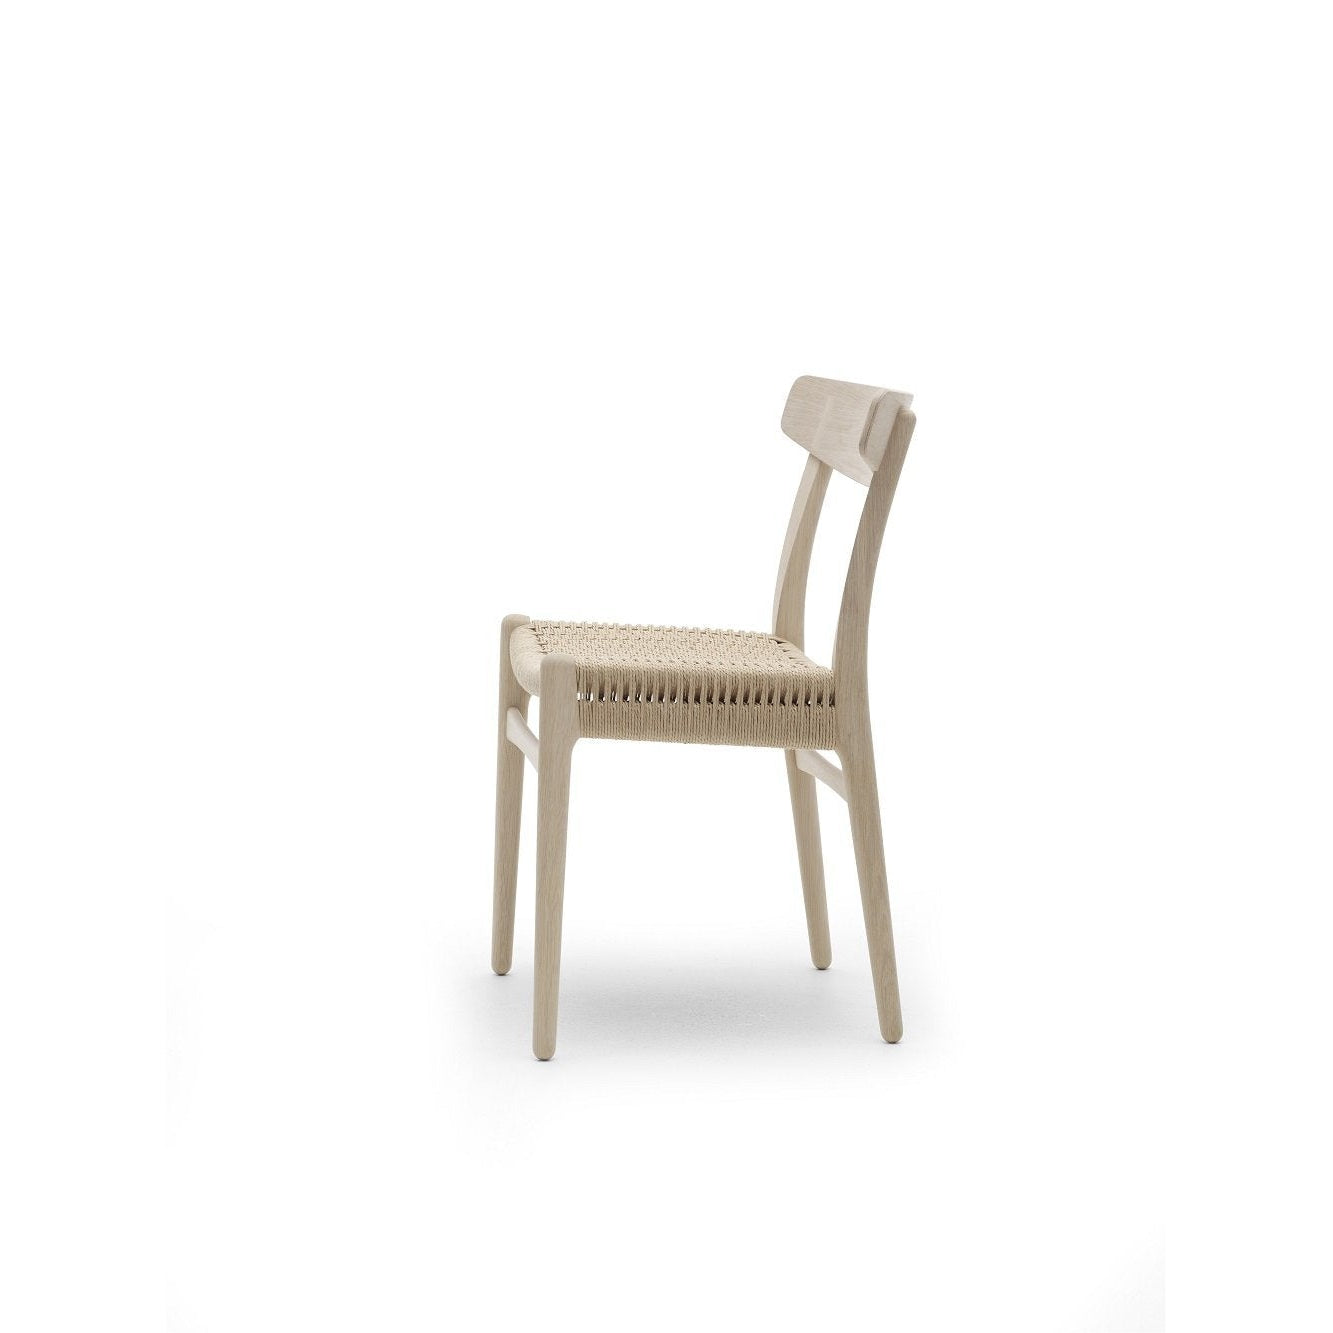 Carl Hansen CH23 -stol, tvålad ek/naturlig sladd